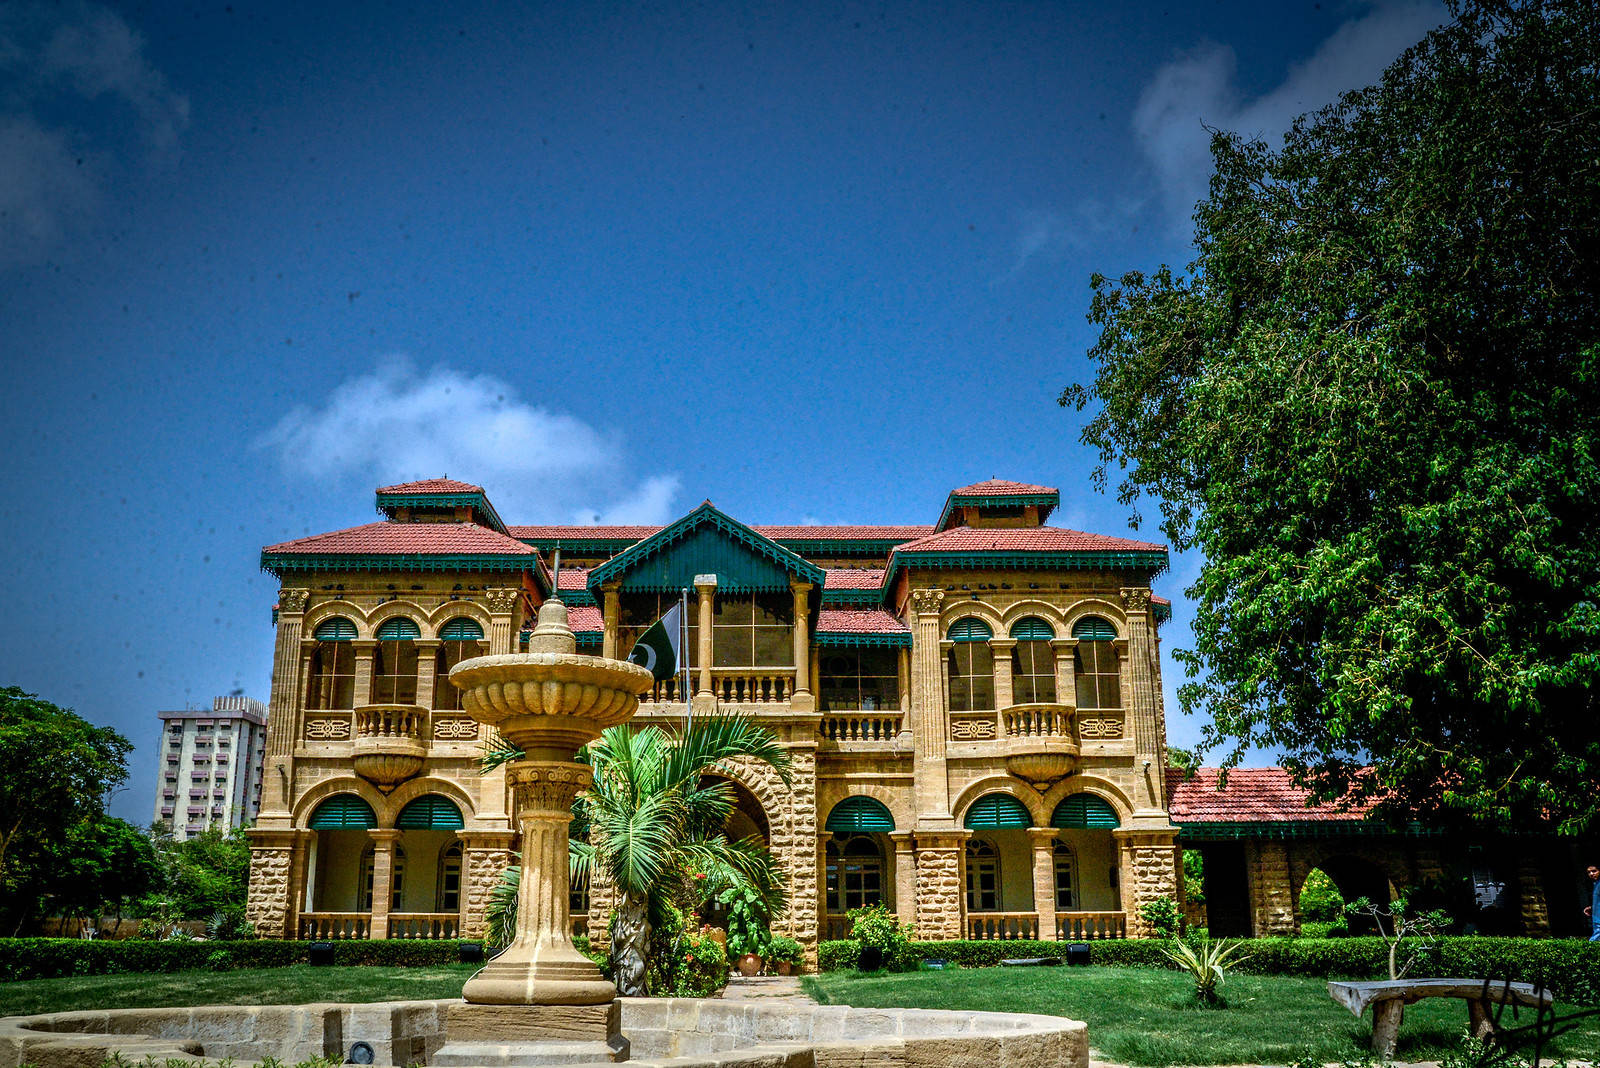 Karachiquaid-e-azam House Museum - Museu Da Casa Quaid-e-azam De Karachi. Papel de Parede